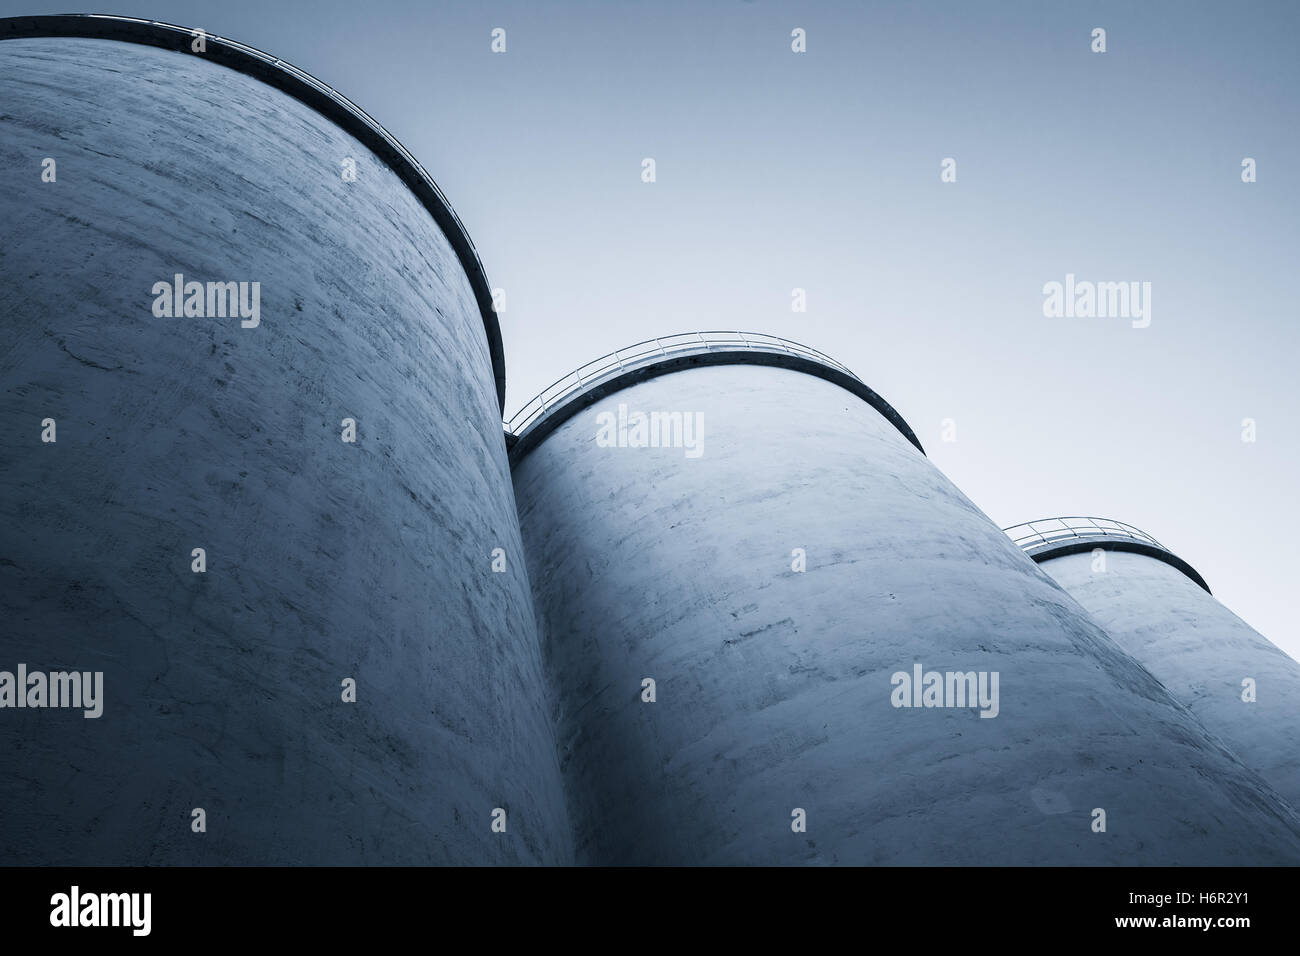 Abstrakte Industriearchitektur fragment, große Tanks aus Beton für die Lagerung von Schüttgut Materialien, blau getönten Foto Stockfoto